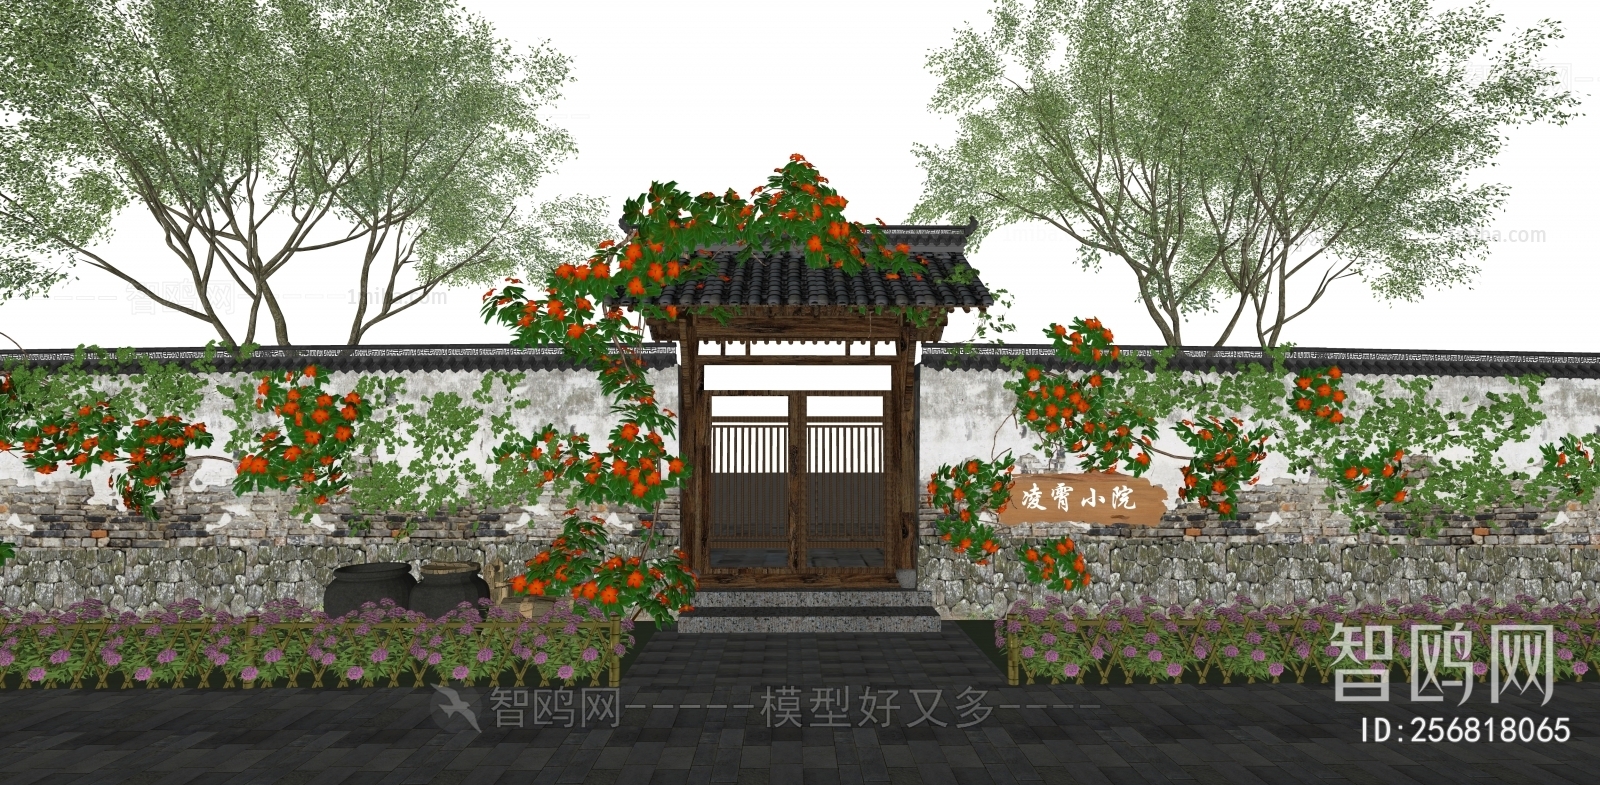 新中式庭院大门景墙围墙种植池